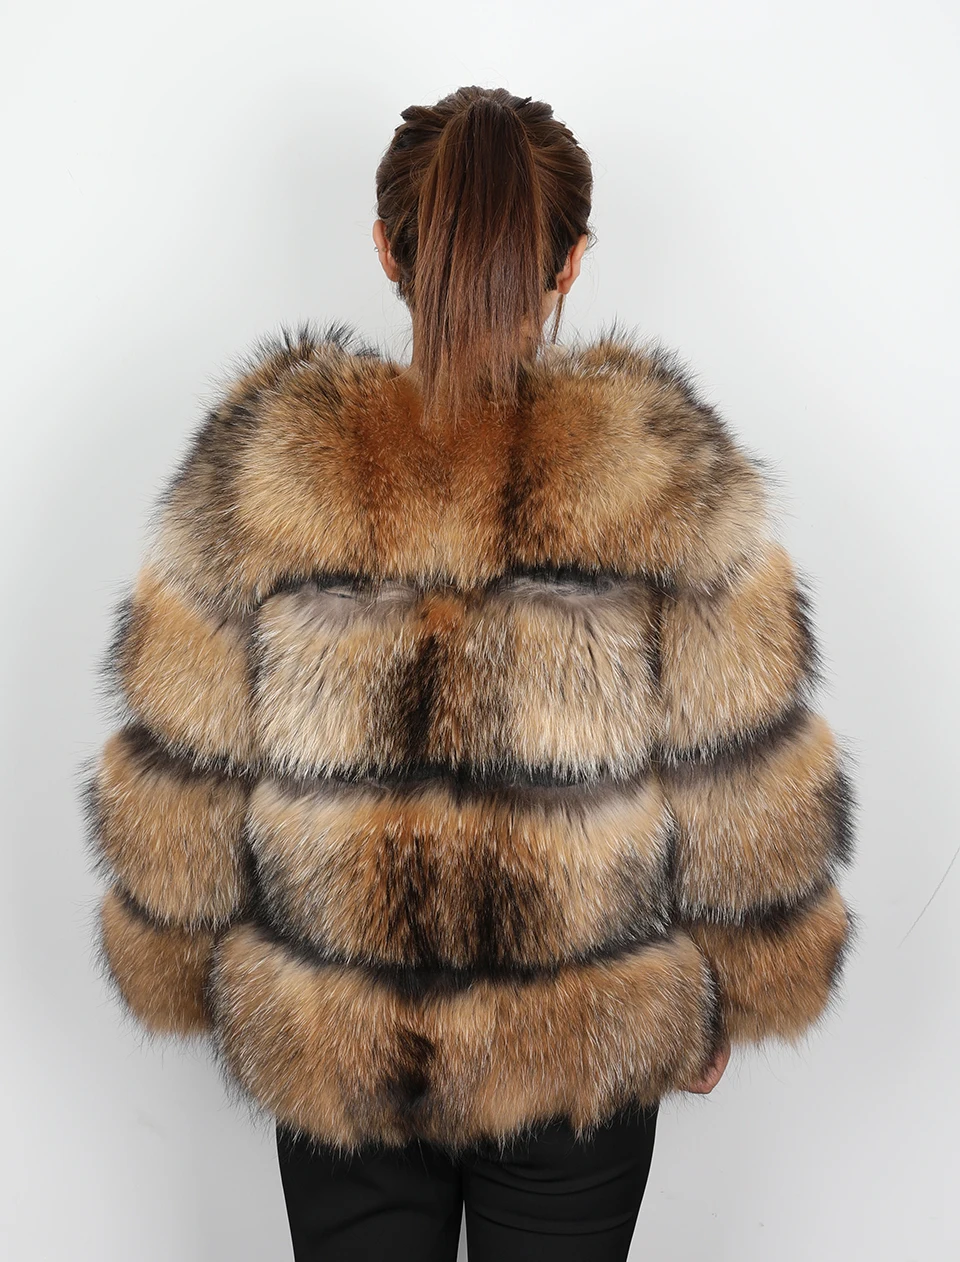 Maomaokong зимняя кожаная куртка, натуральное пальто из натурального меха енота, высокое качество, для женщин, круглый вырез, чтобы согреться, парка, вечерние